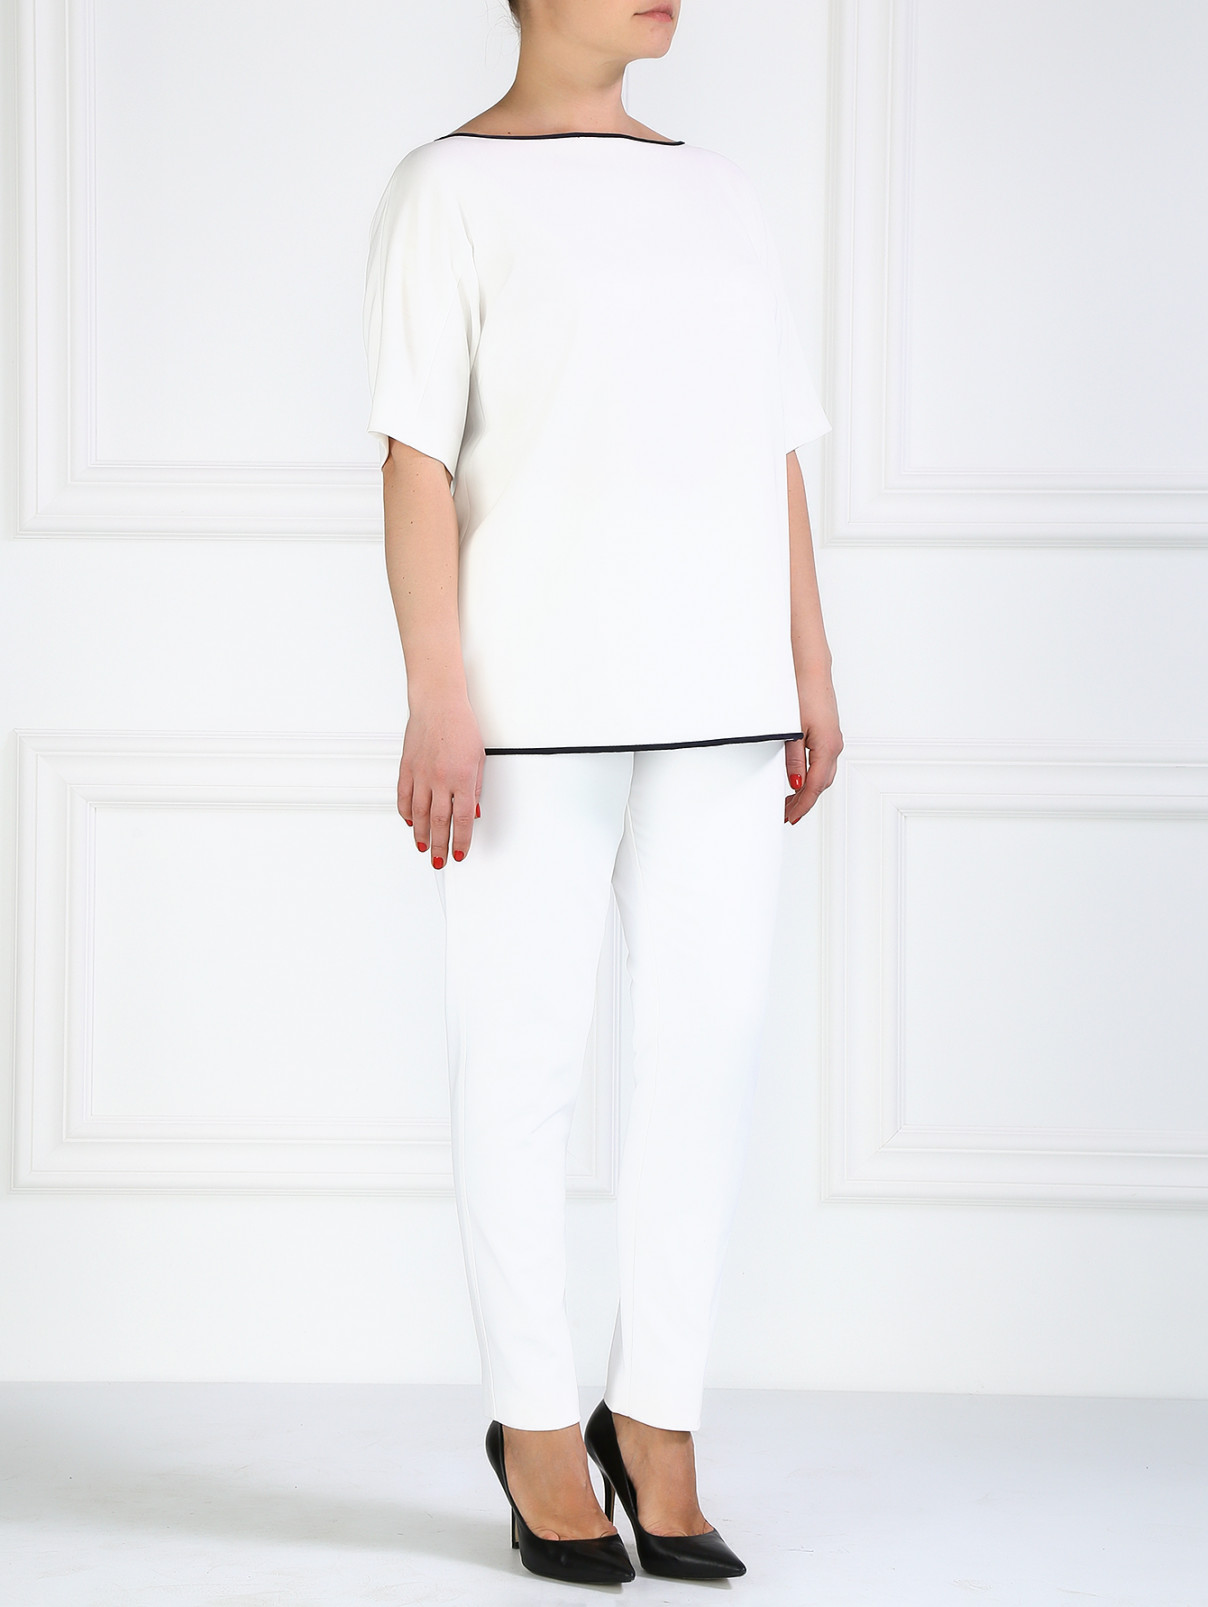 Блуза свободного фасона Marina Rinaldi  –  Модель Общий вид  – Цвет:  Белый